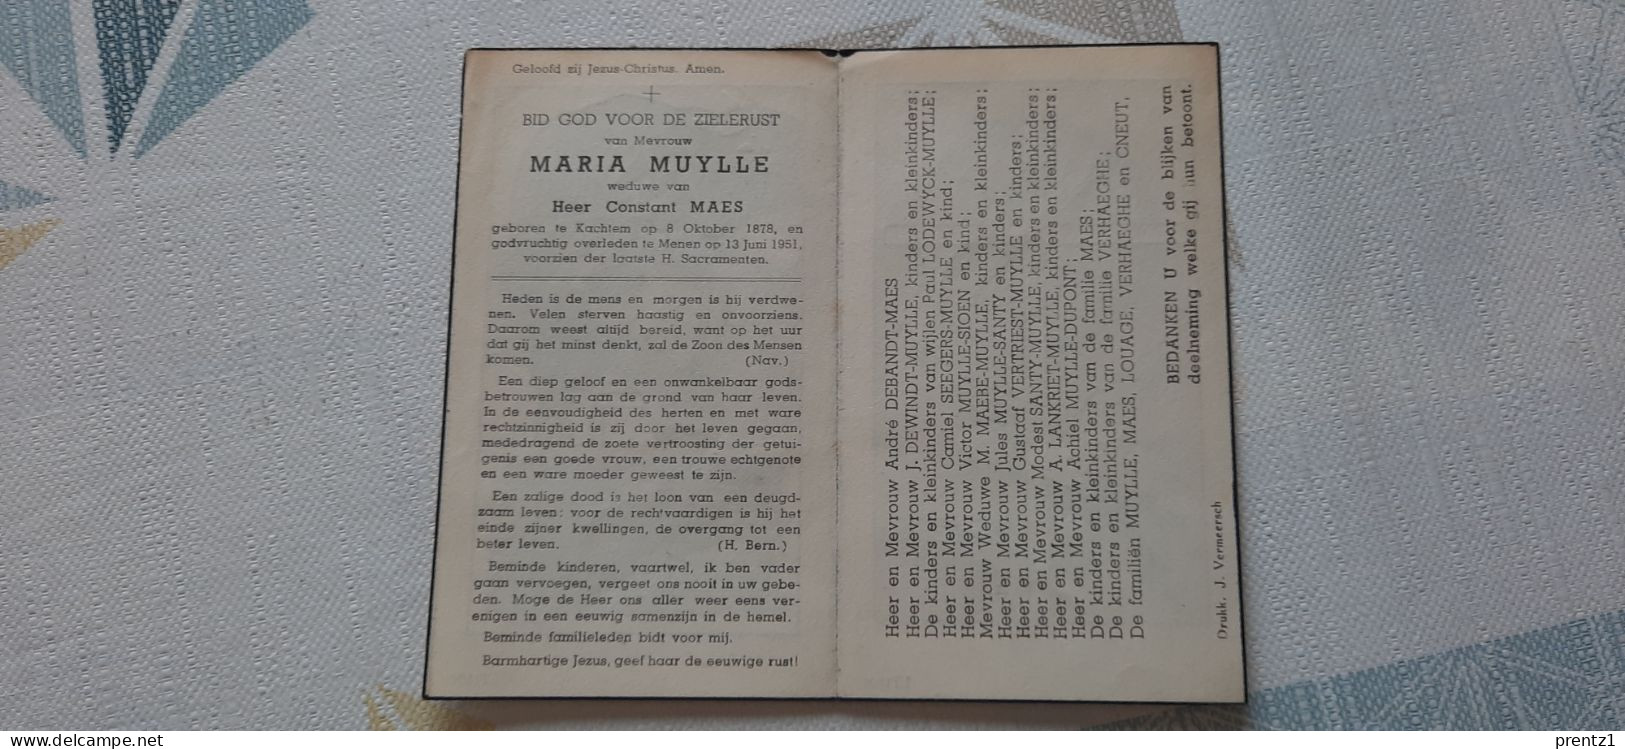 Marie Muylle Geb. Kachtem 8/10/1878- Getr. C. Maes - Gest. Menen 13/06/1951 - Devotieprenten